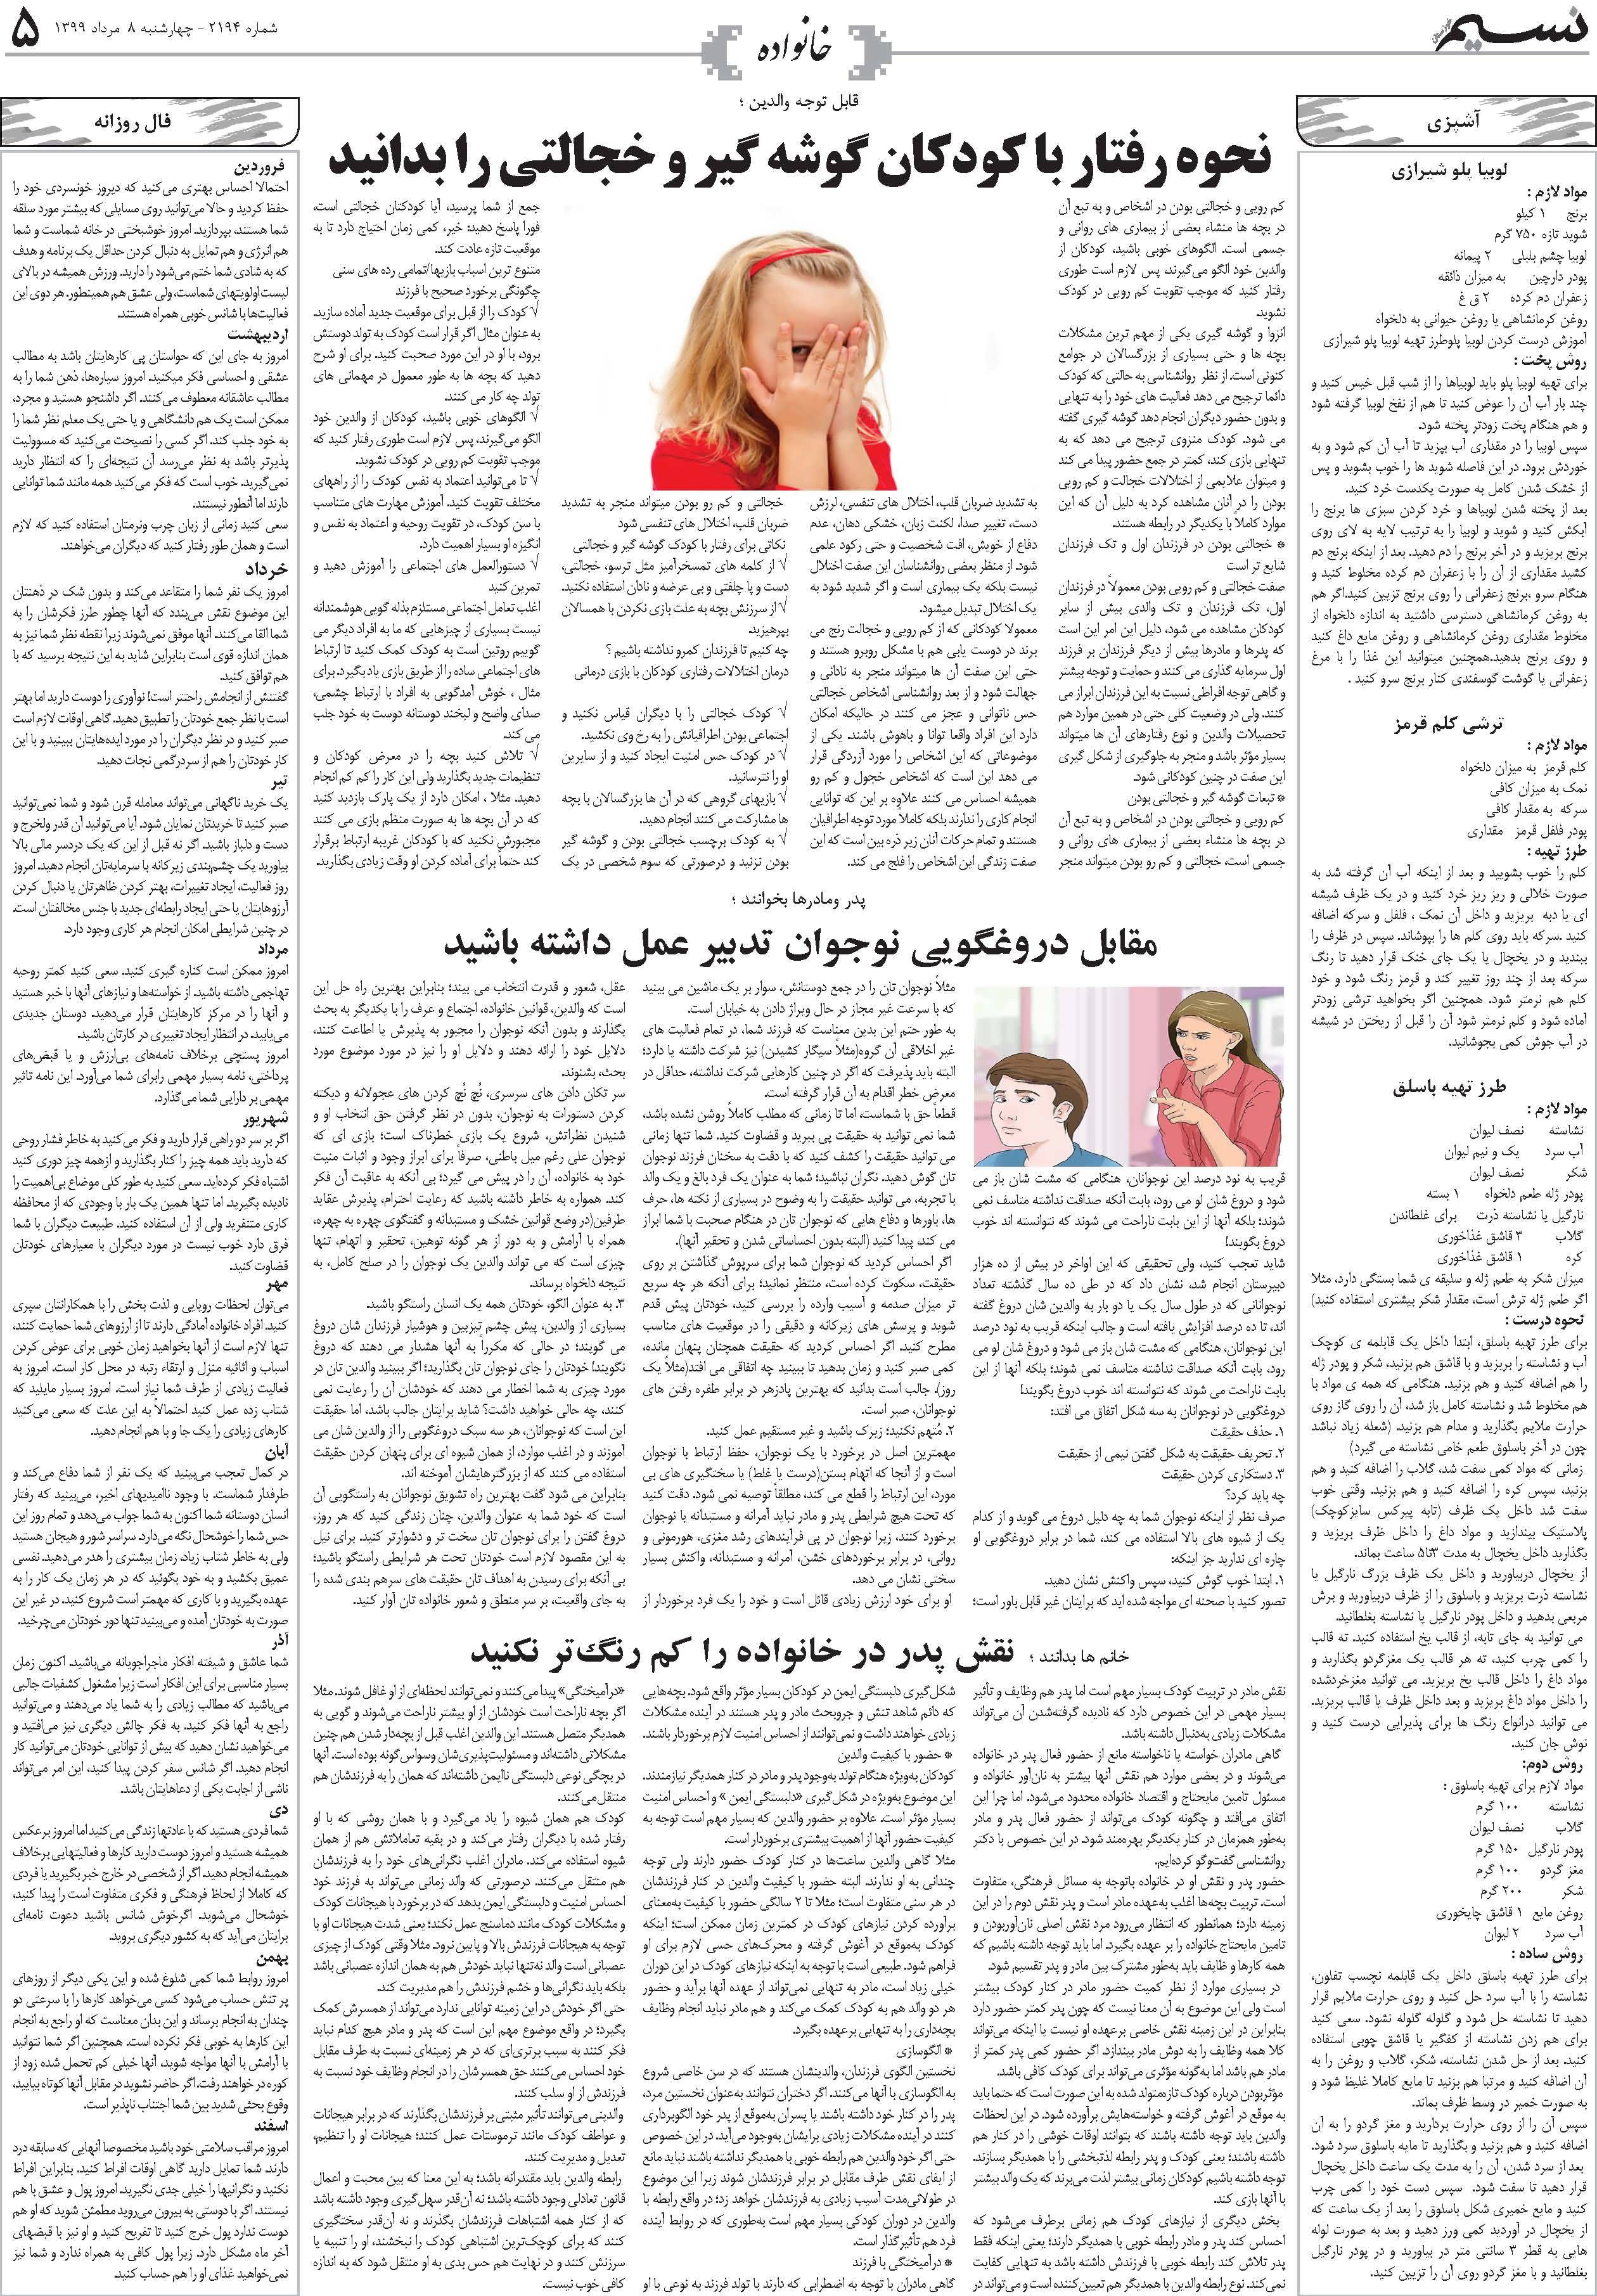 صفحه خانواده روزنامه نسیم شماره 2194